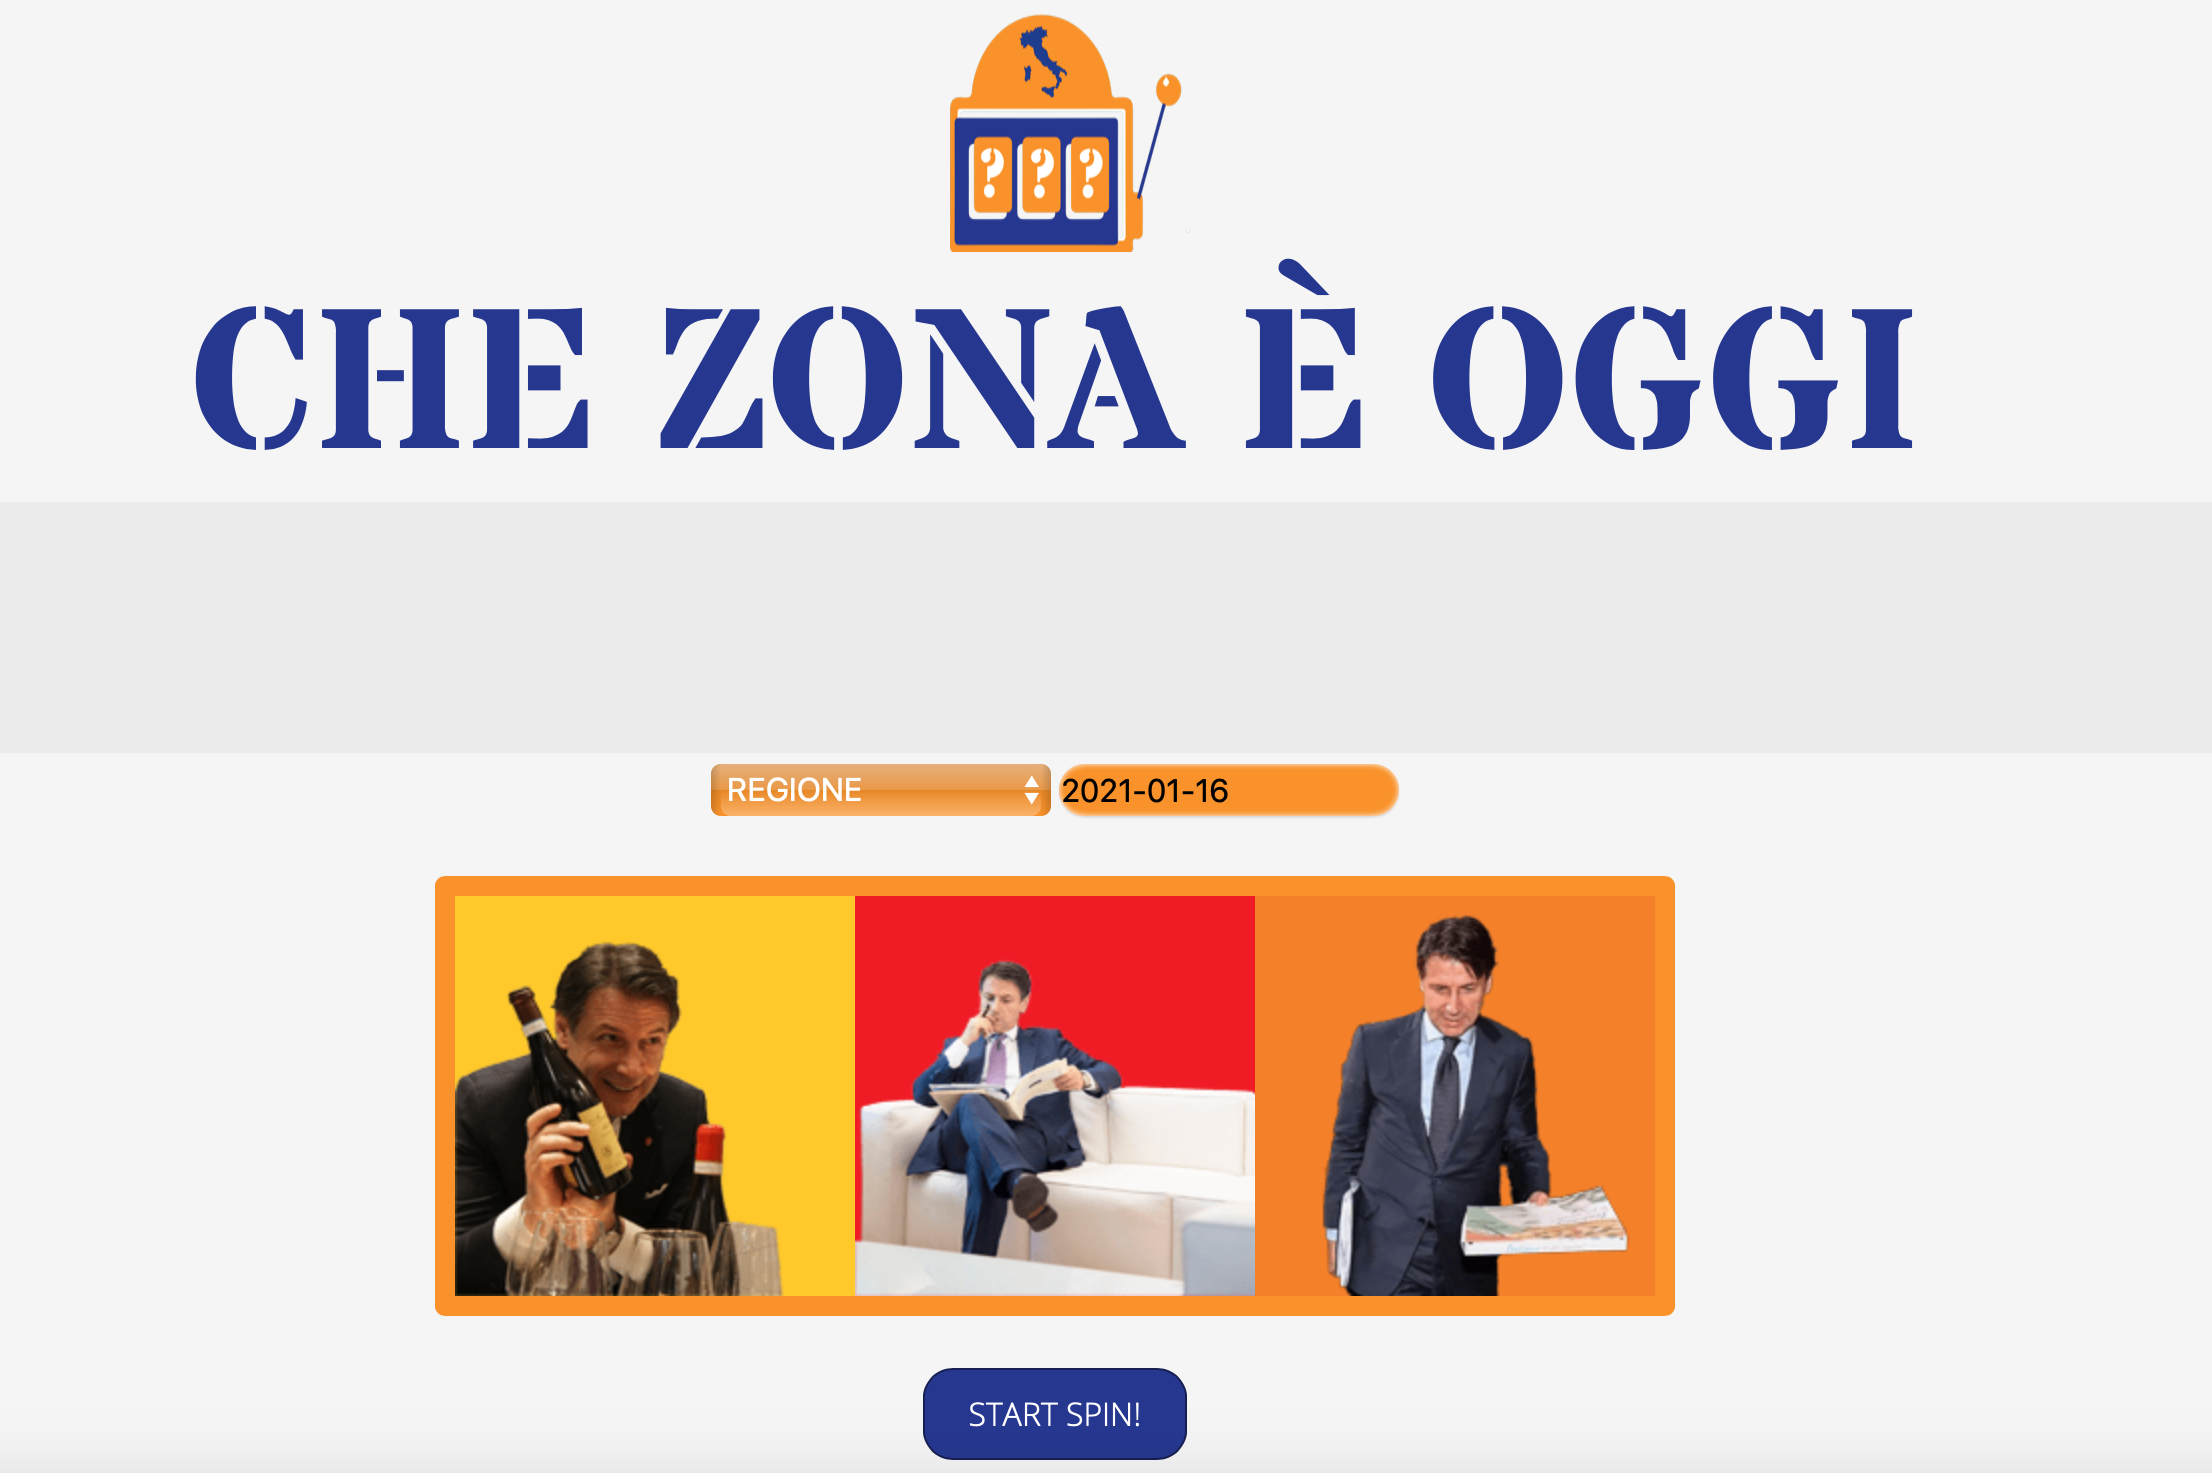 “Che zona è oggi?”, dal dilemma quotidiano alla soluzione sul web: un sito goliardico risolve il quesito di milioni di italiani